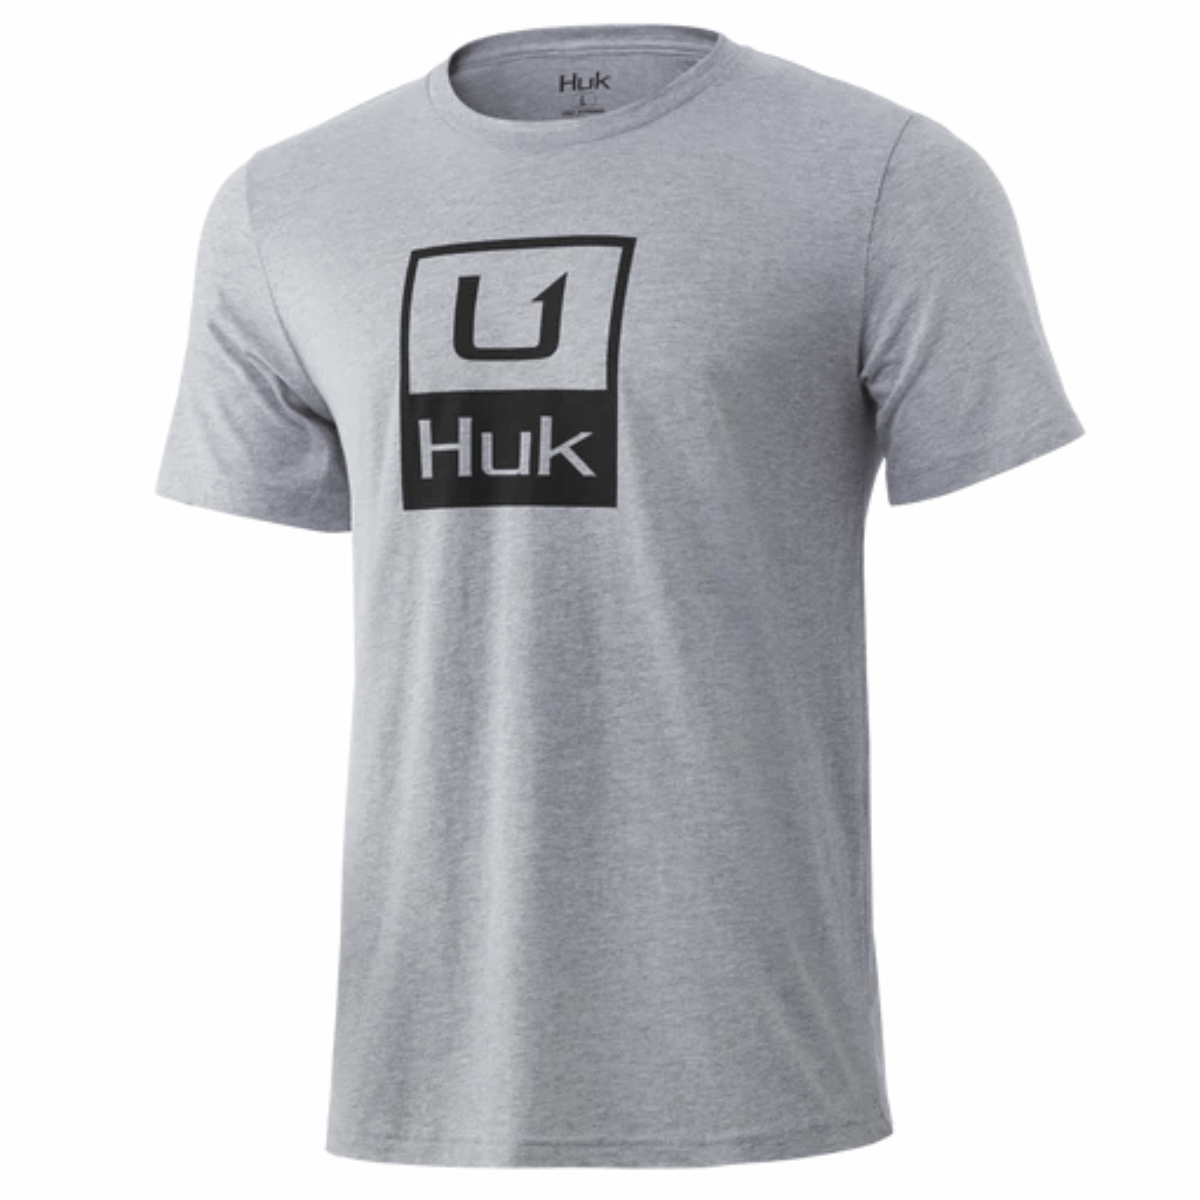 Huk Huk'd Up T-Shirt - Men's - Als.com